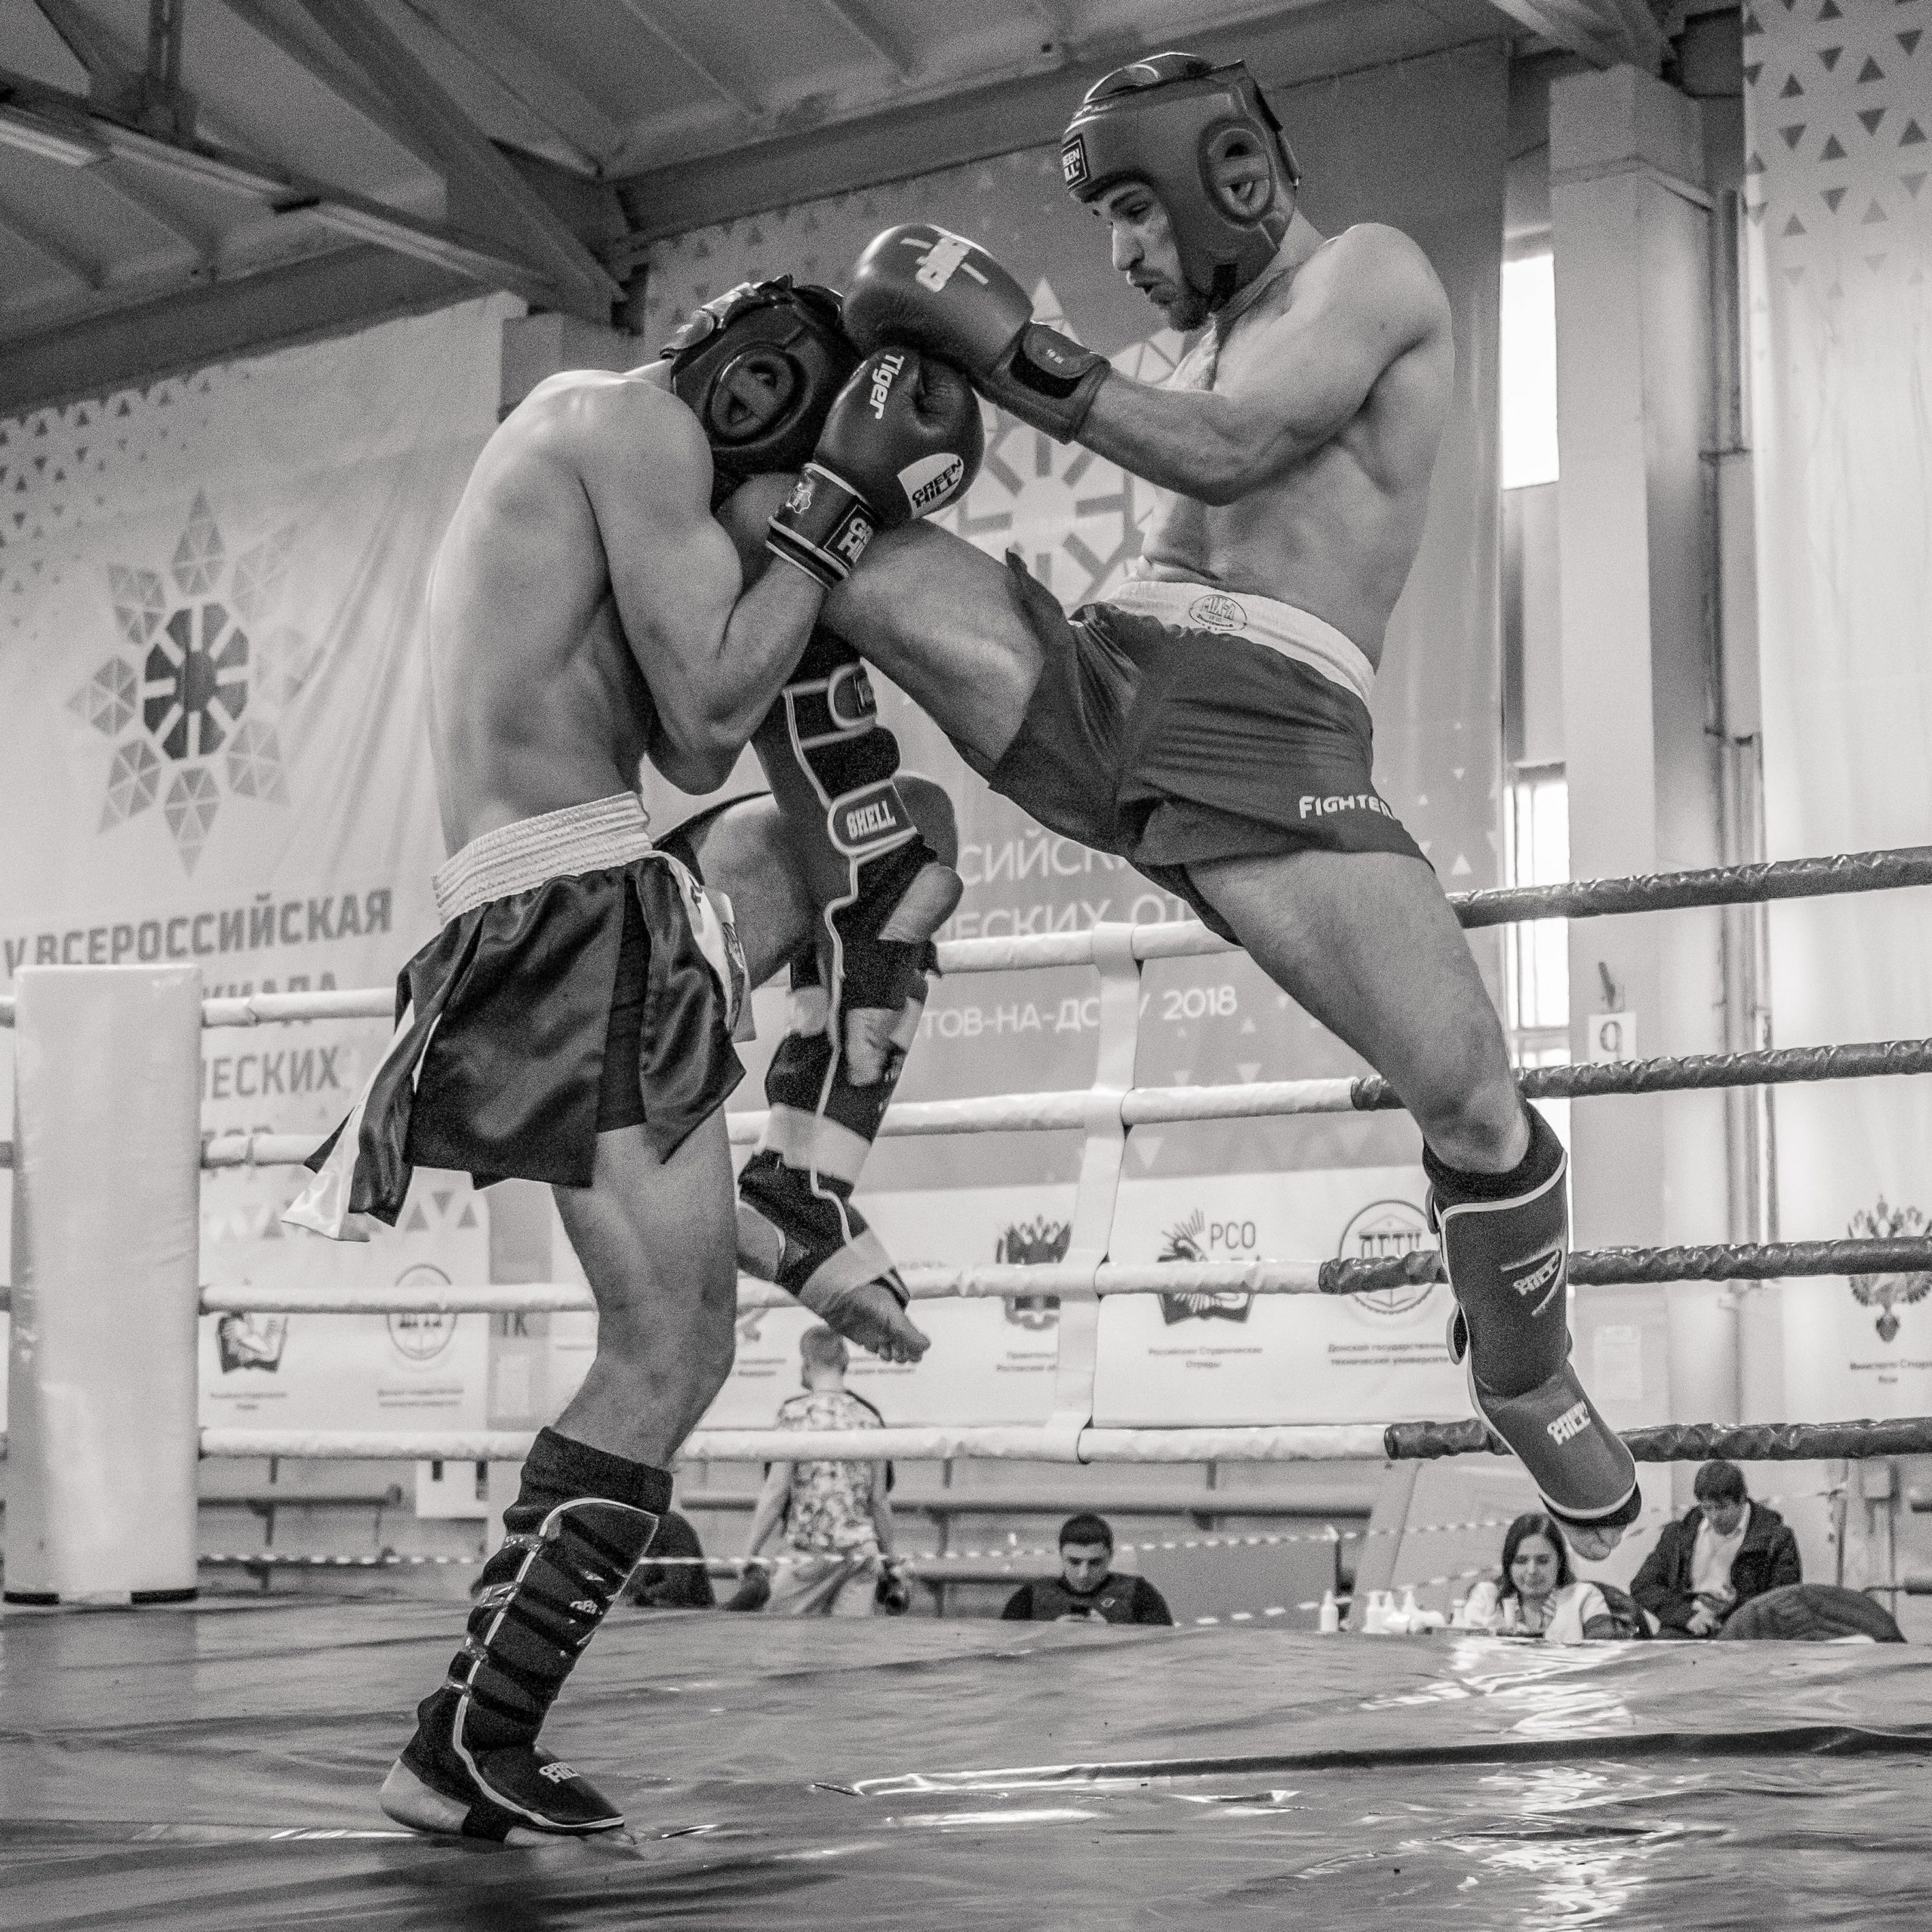 Guantes MMA Kick Boxing Competición Lucha Boxeo Entrenamiento